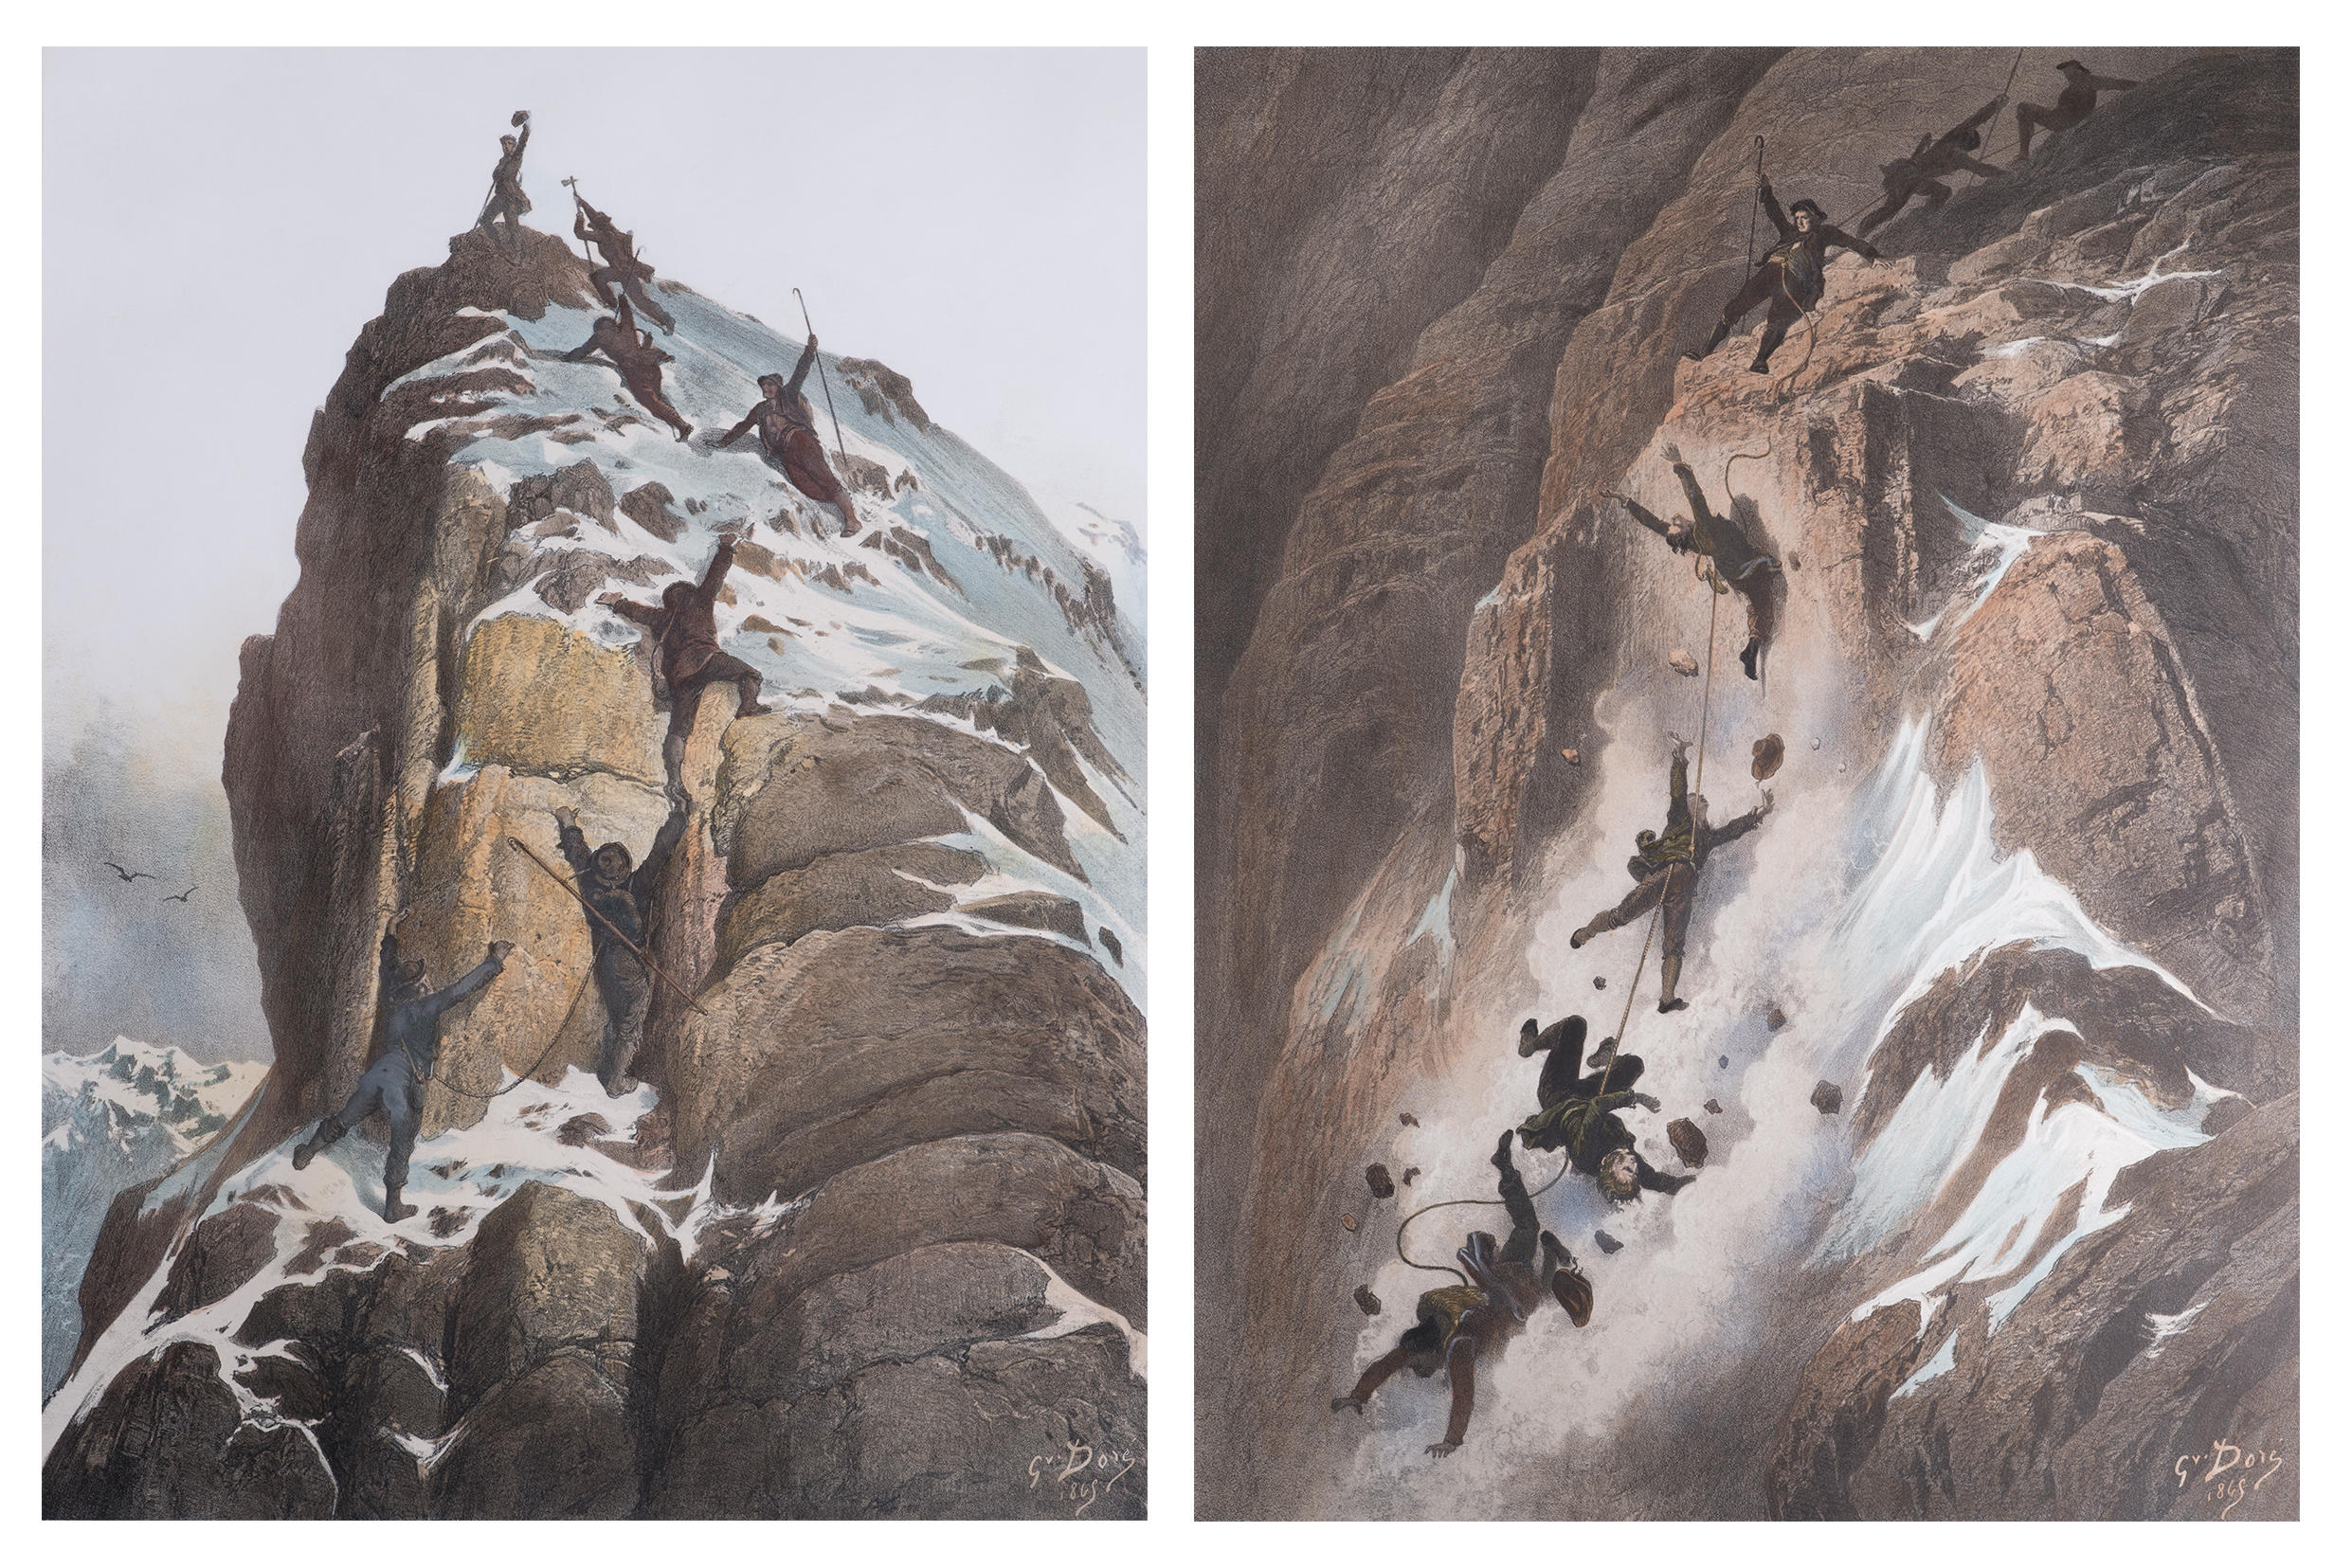 Escenas del ascenso al Cervino y de la caída de parte del equipo de alpinistas.